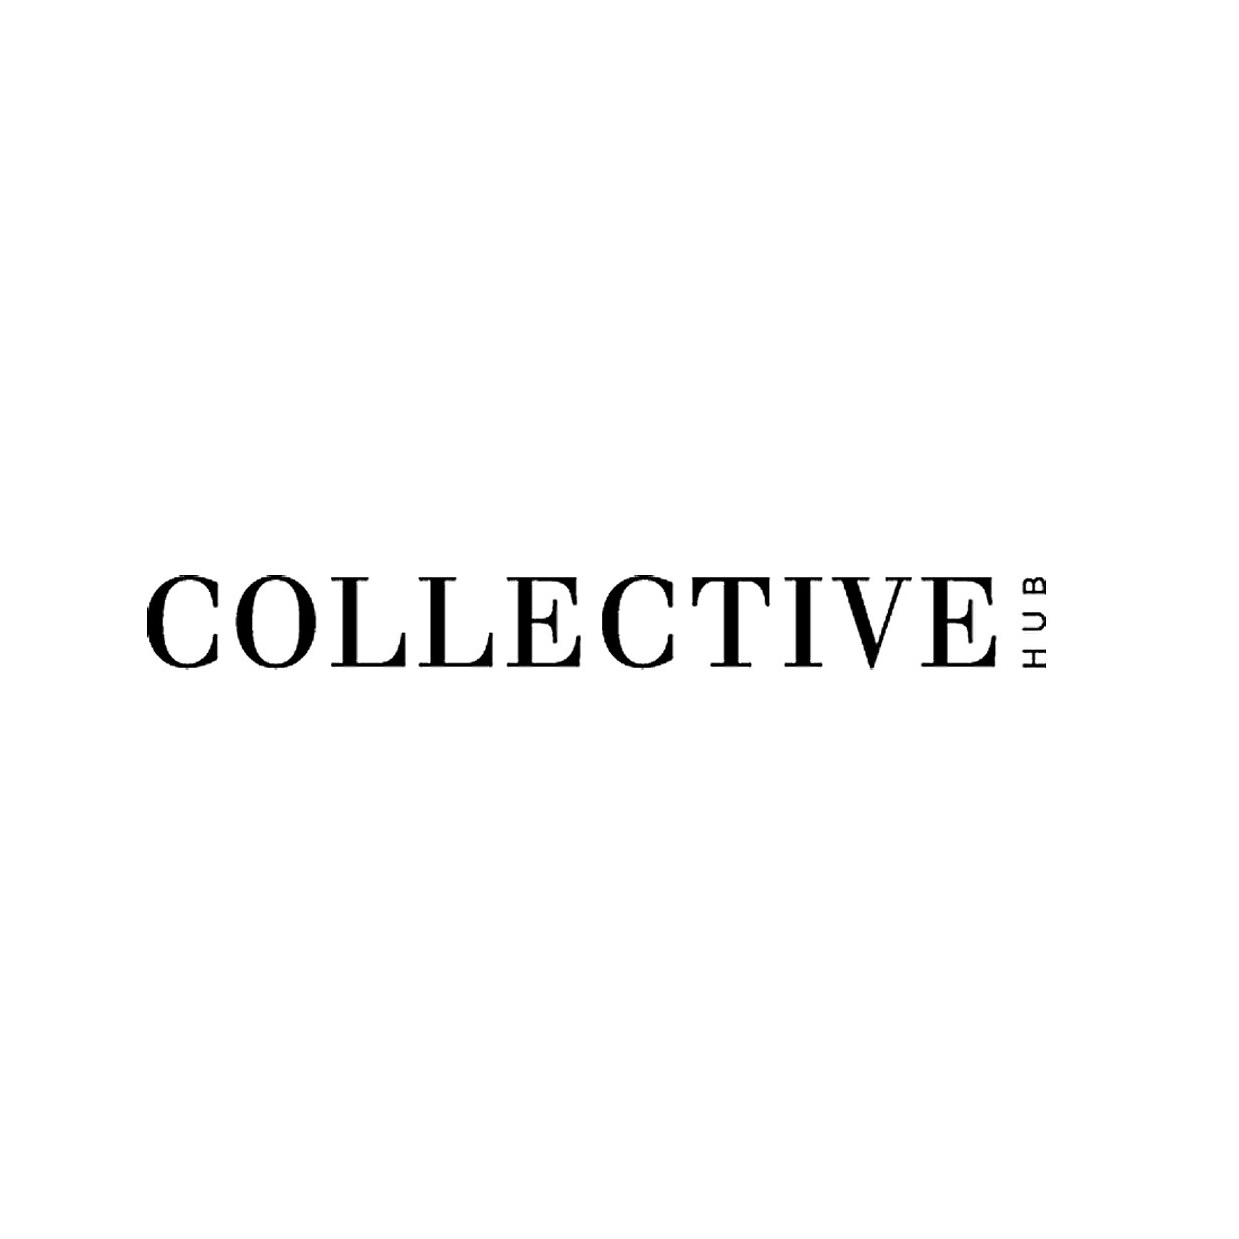 CollectiveHub-1.jpg